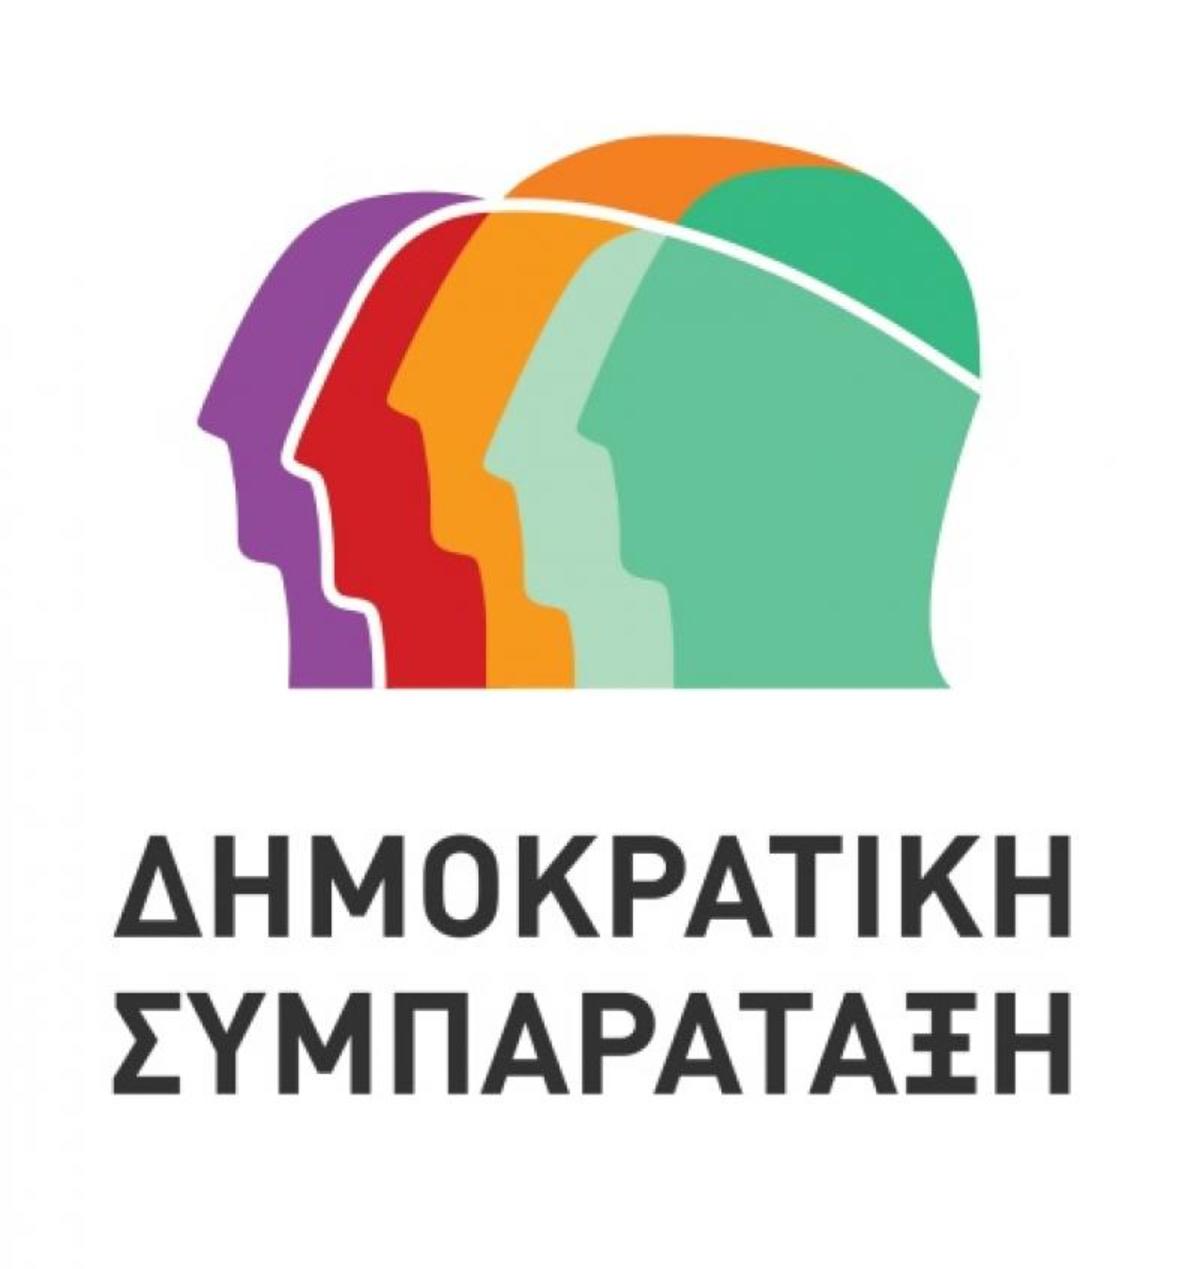 Το νέο λογότυπο της Δημοκρατικής Συμπαράταξης θυμίζει ΣΥΡΙΖΑ